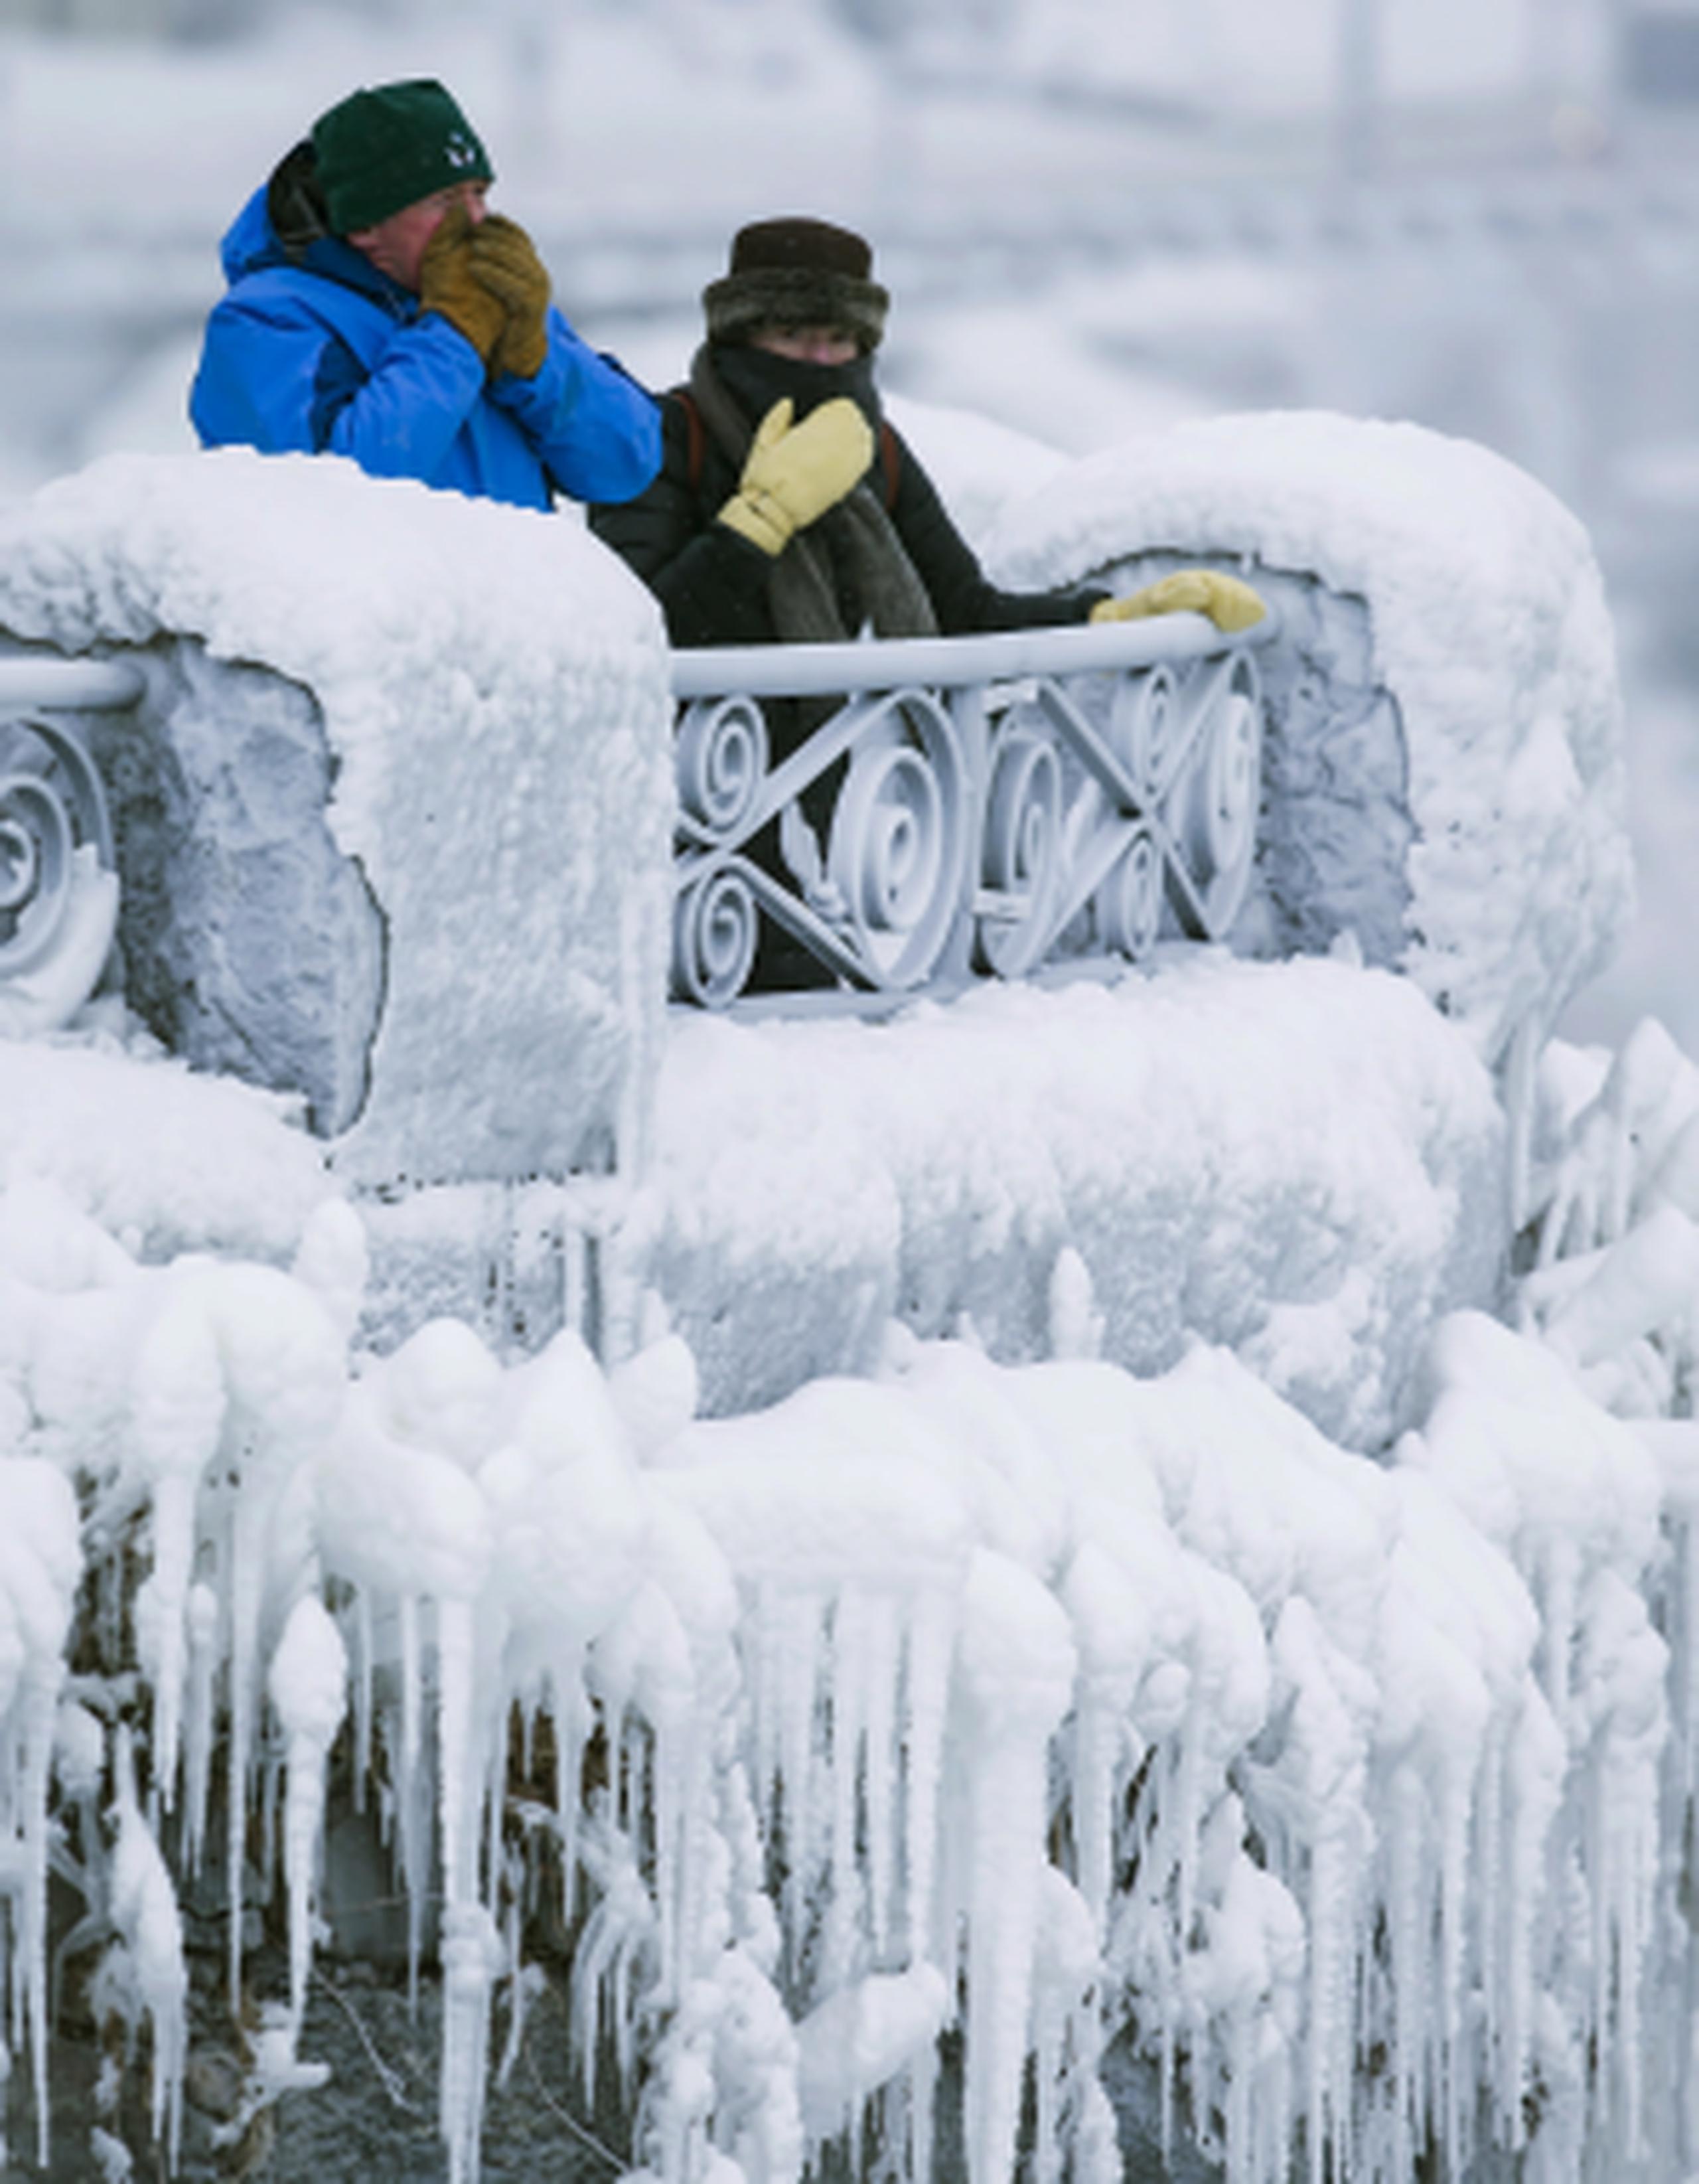 Las autoridades advierten a los turistas que se protejan para evitar congelaciones. (AP)